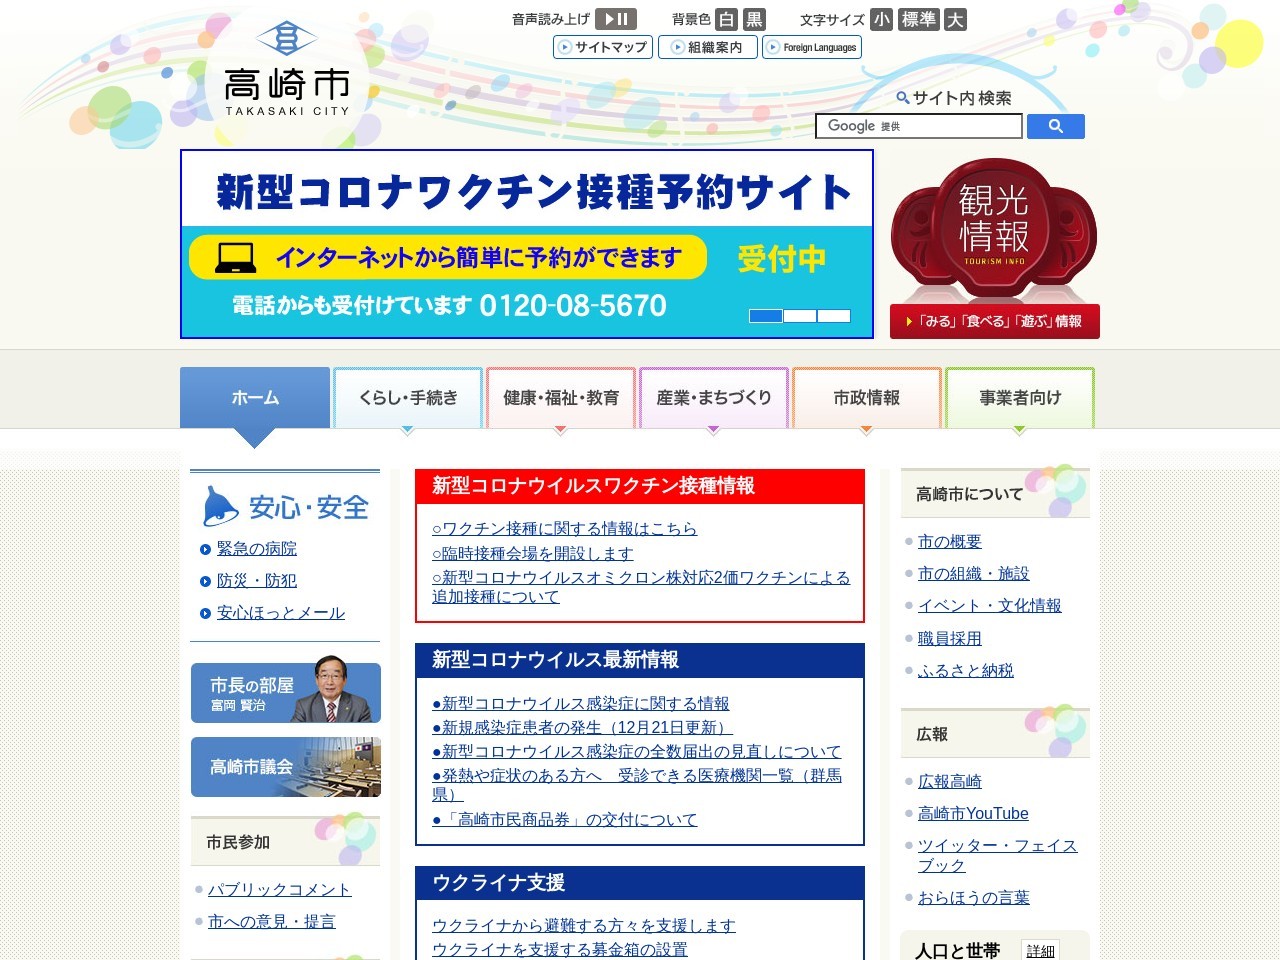 高崎市役所 総務部職員課のクチコミ・評判とホームページ